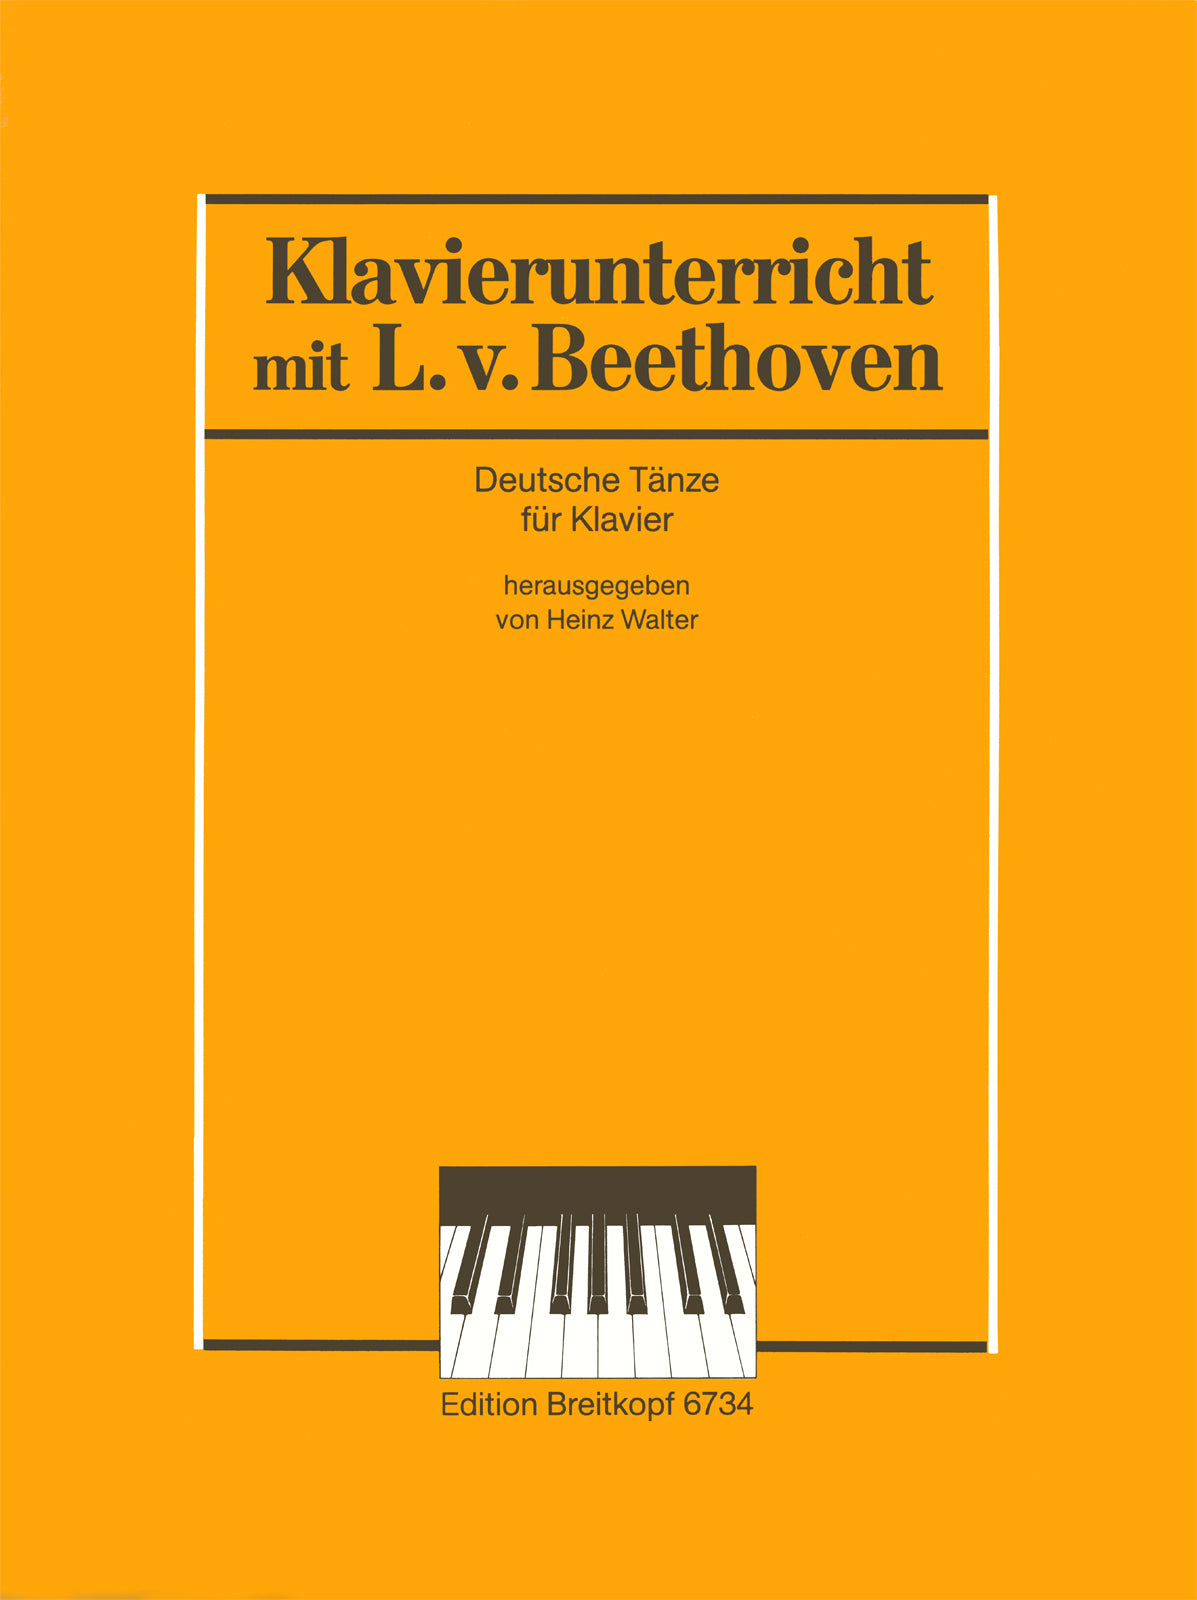 Beethoven: German Dances